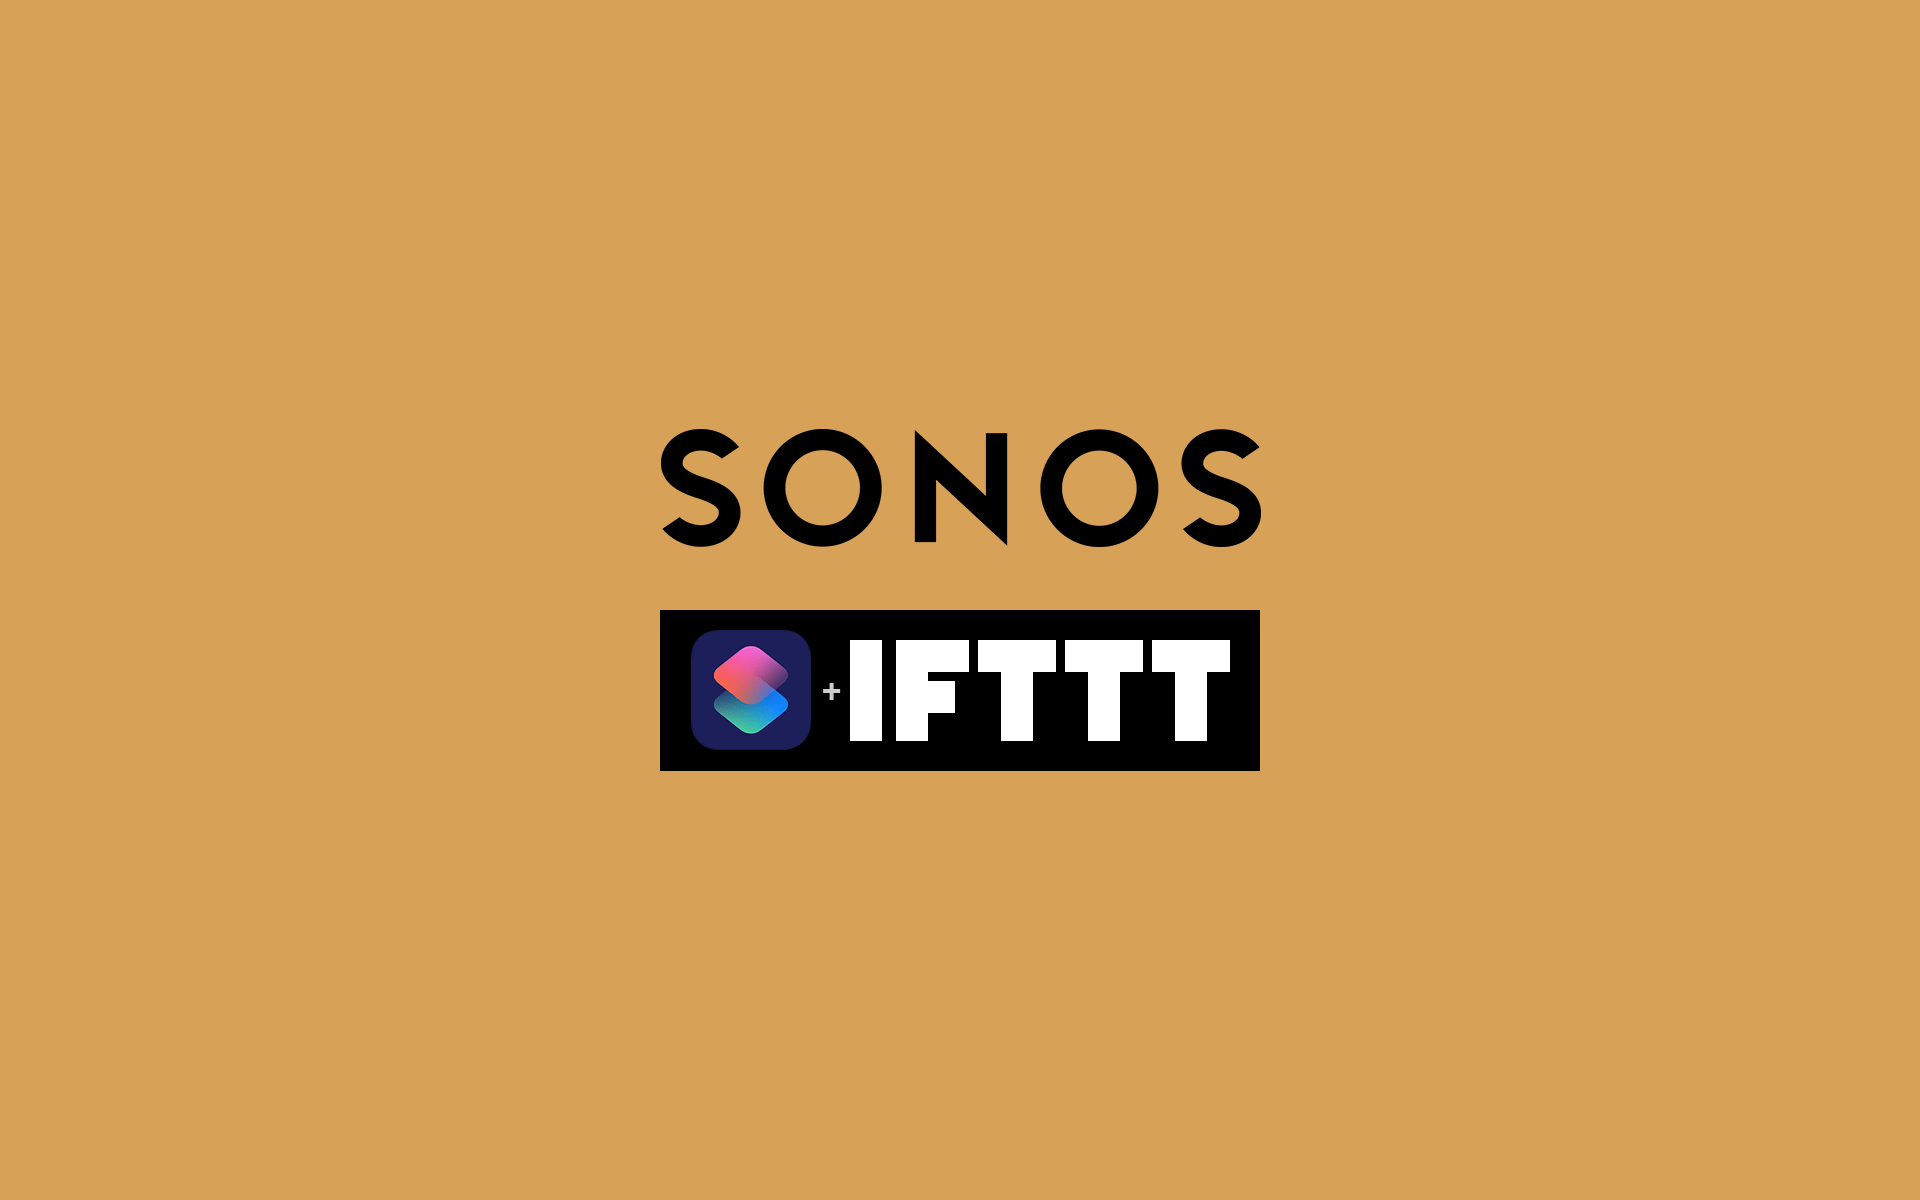 SONOSをIFTTTとショートカットで操作する方法